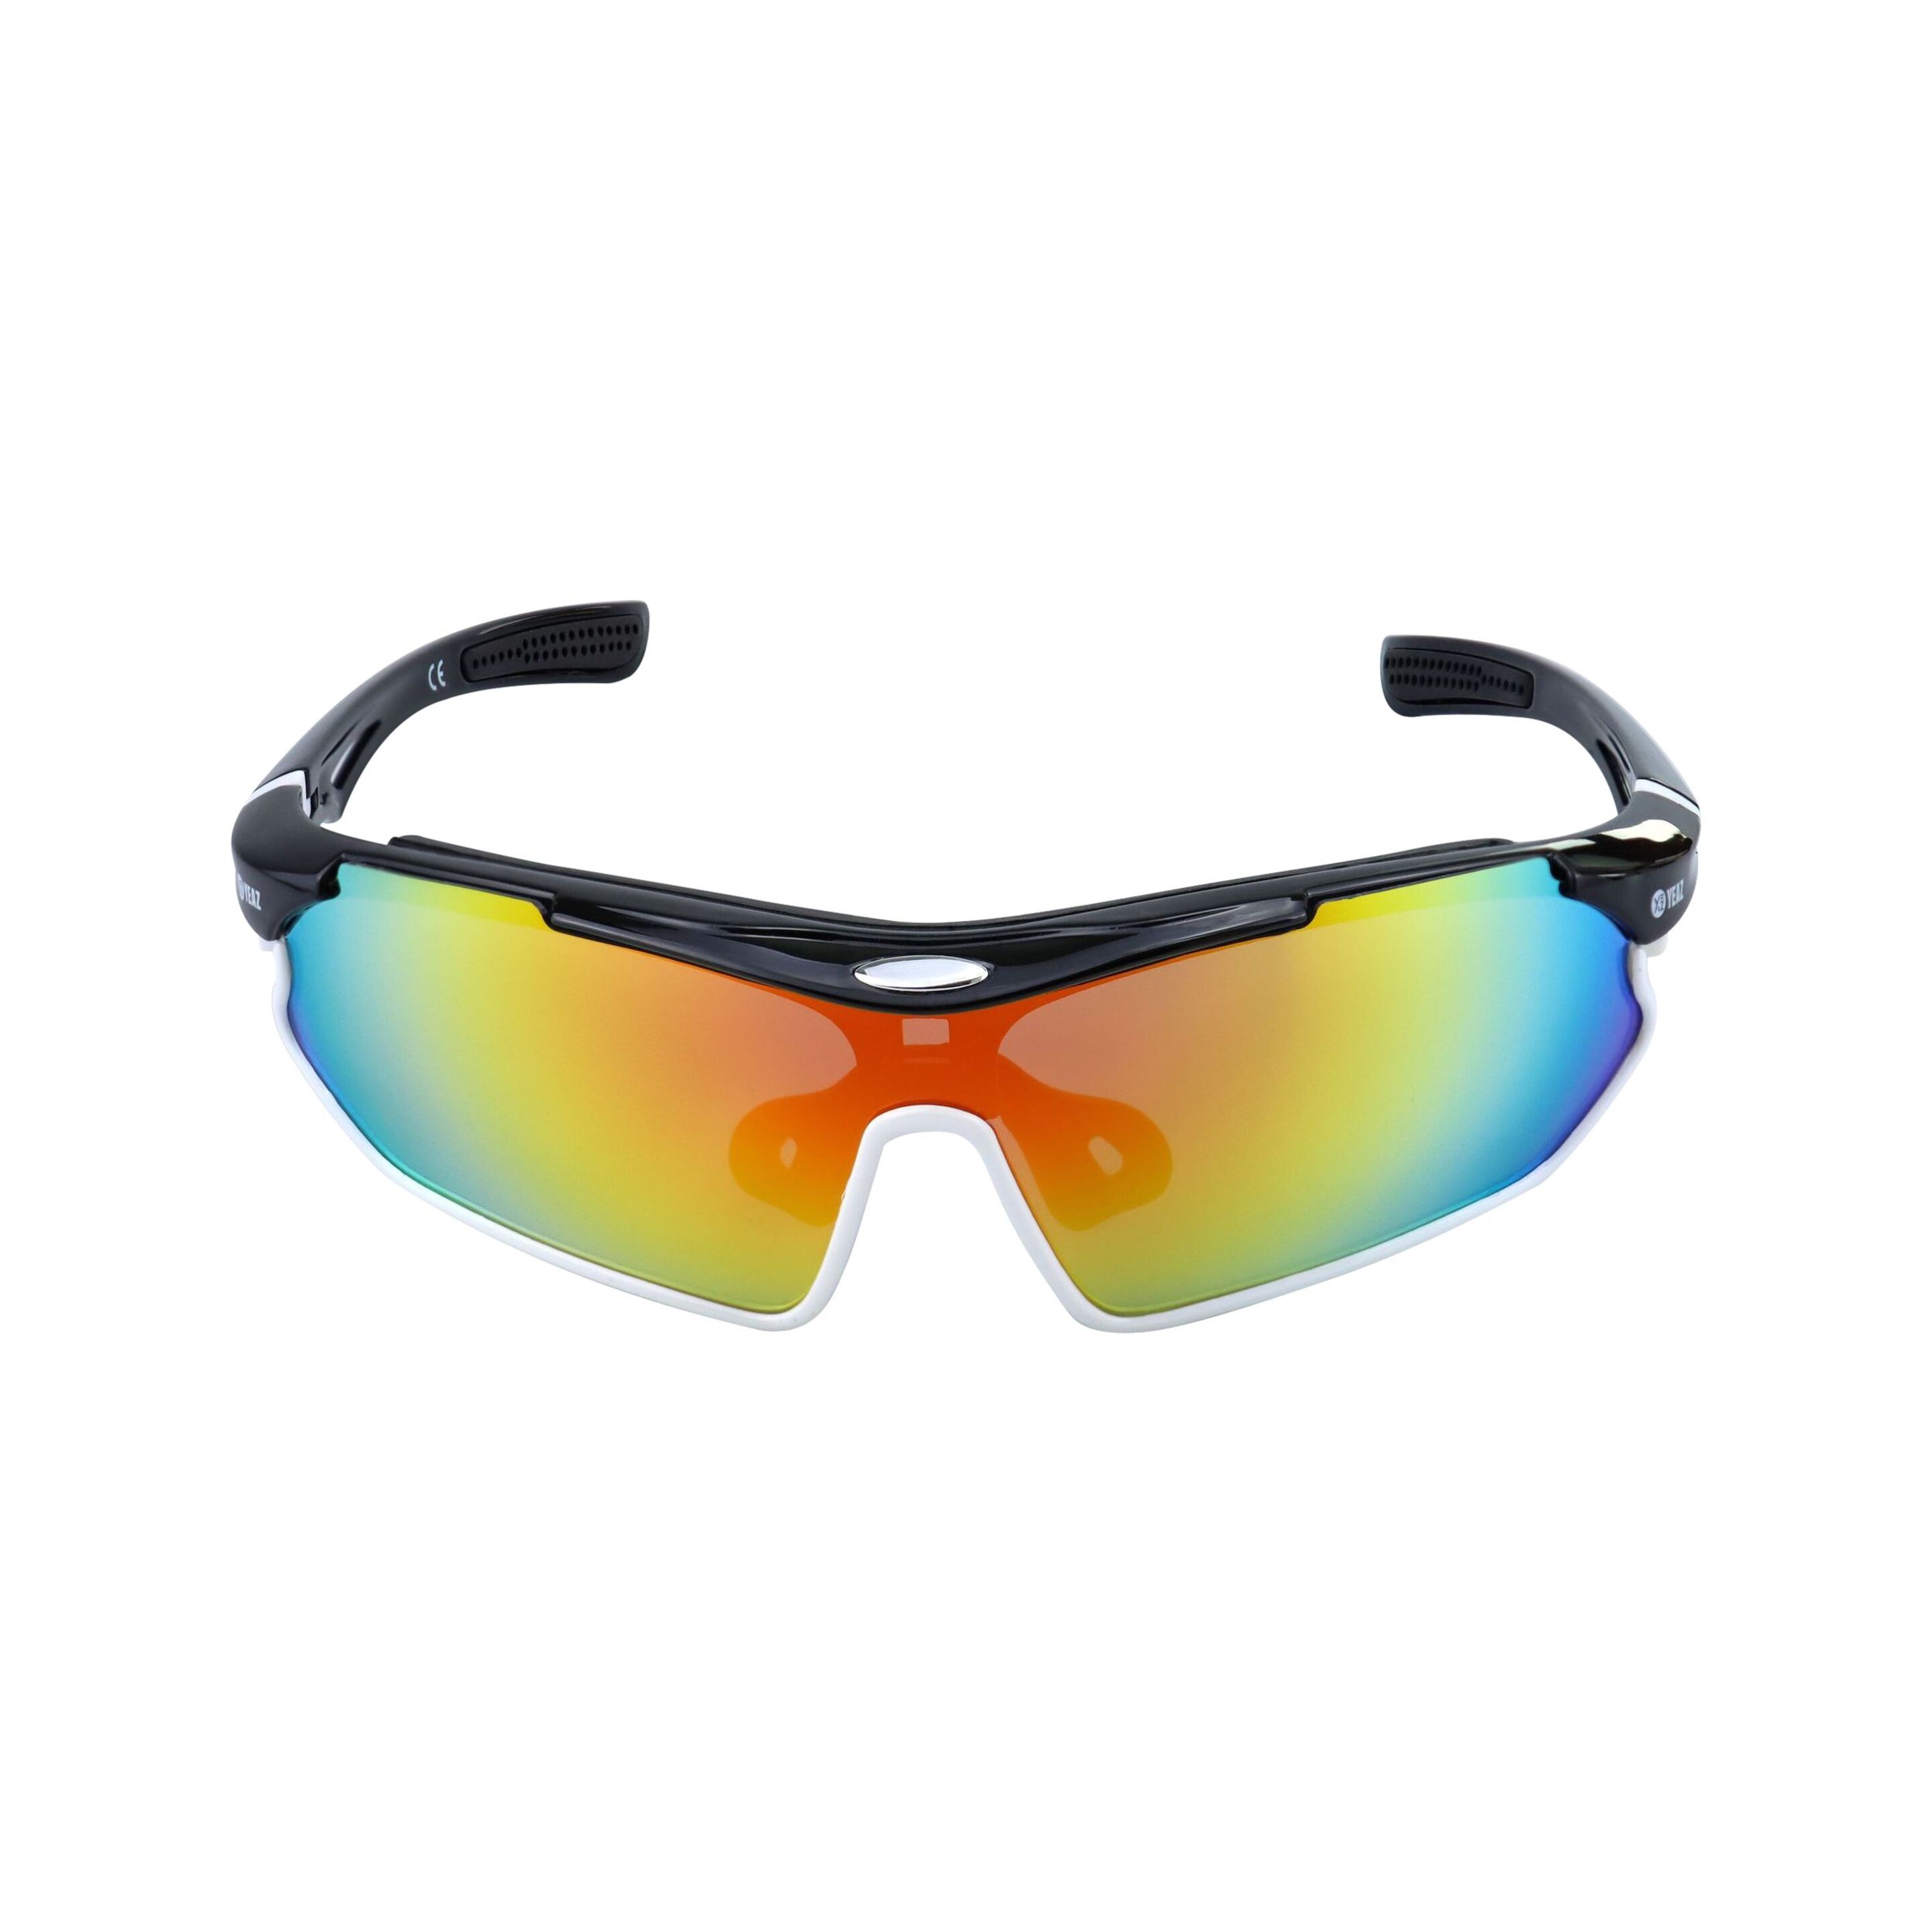 Óculos De Sol Desportivos Preto/branco/vermelho Yeaz Sunray